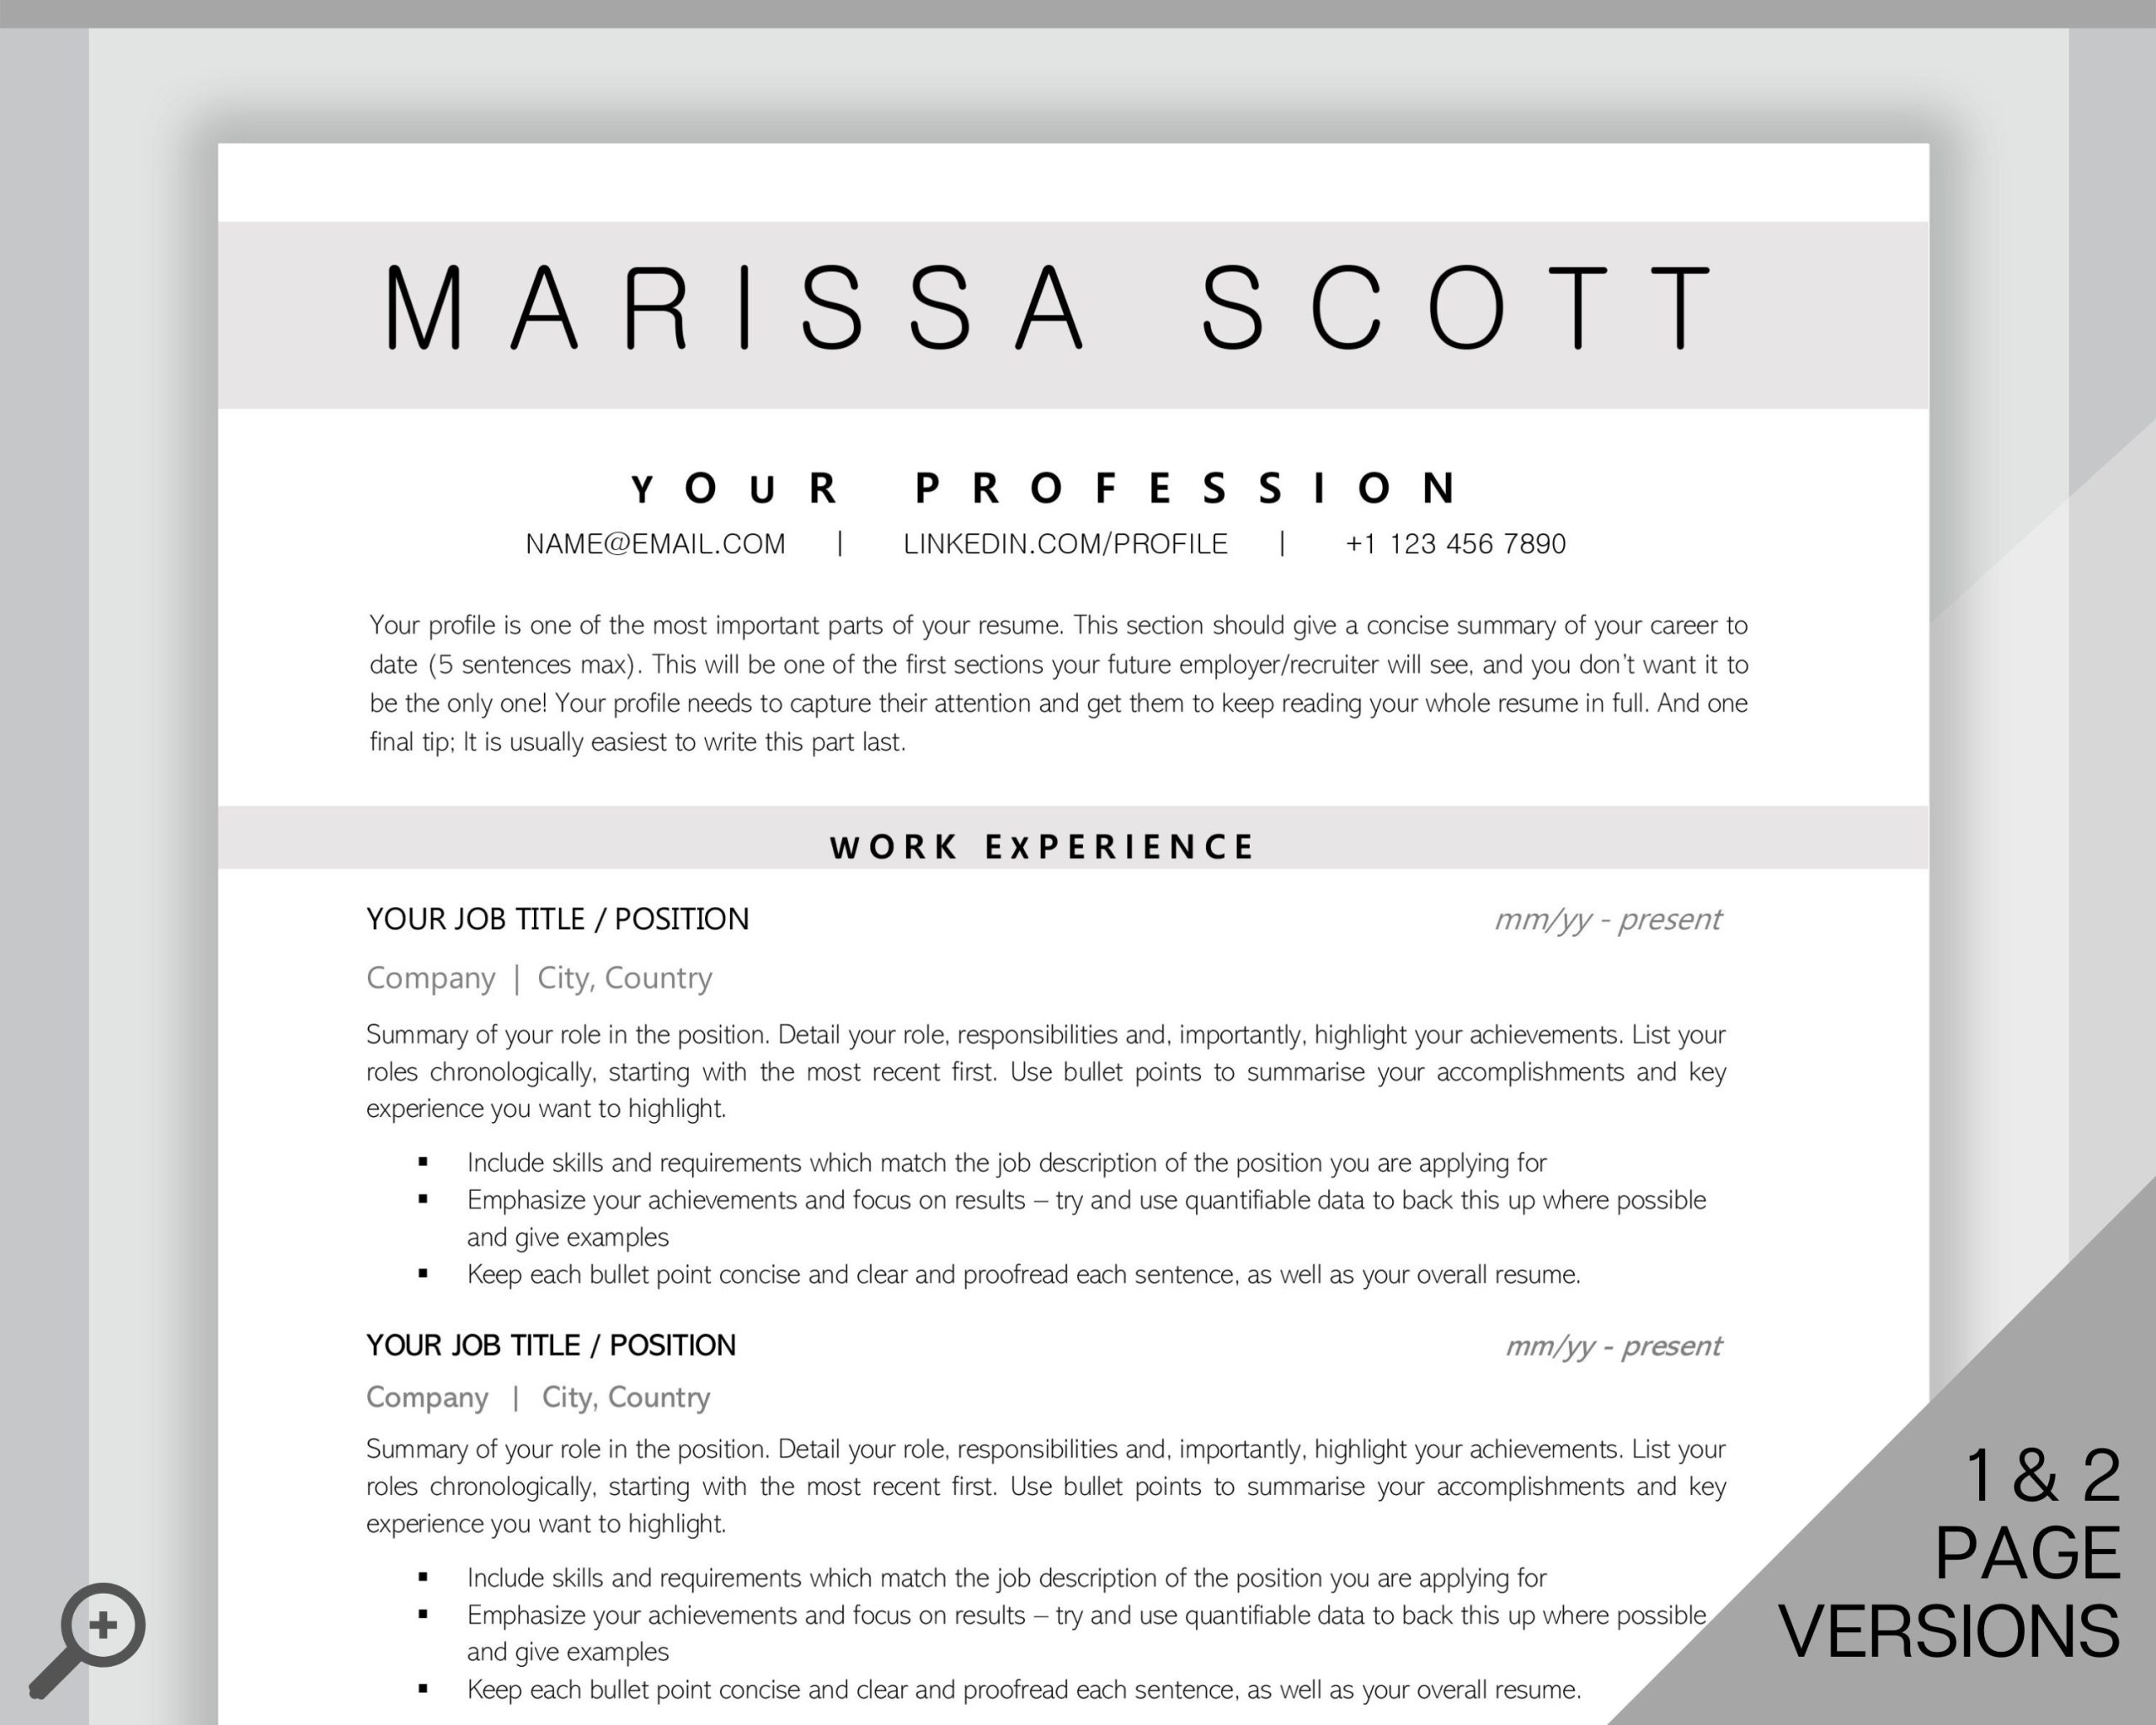 Back Page Of Resume Work Sample Design Professional Resume Template Word. Cv Template Professional – Etsy